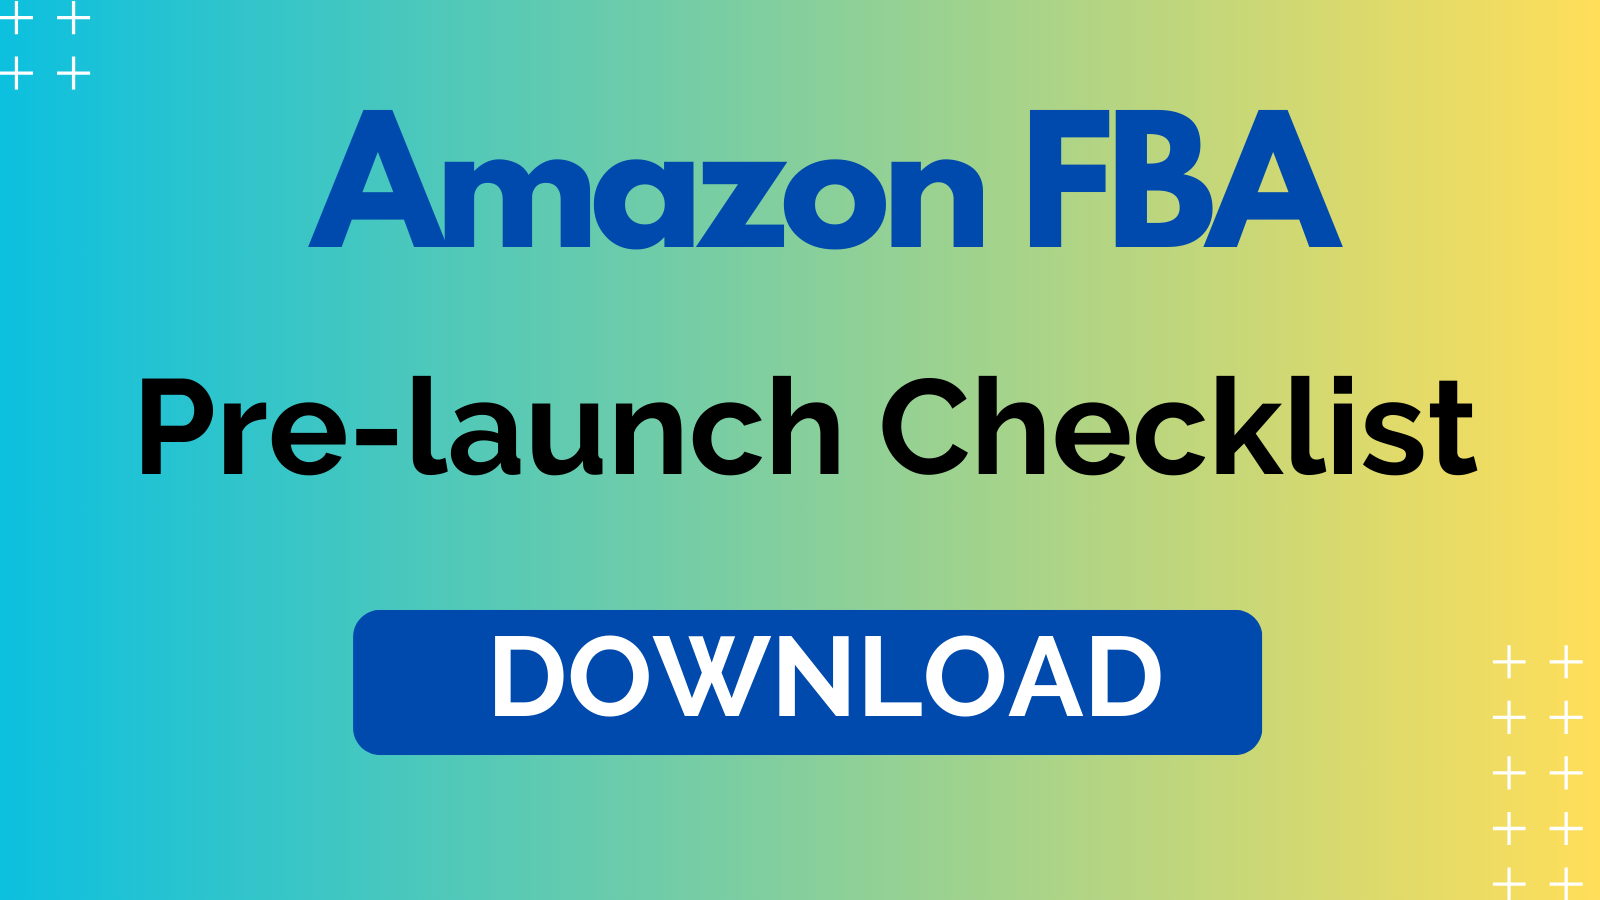 Amazon FBA pre-launch checklist